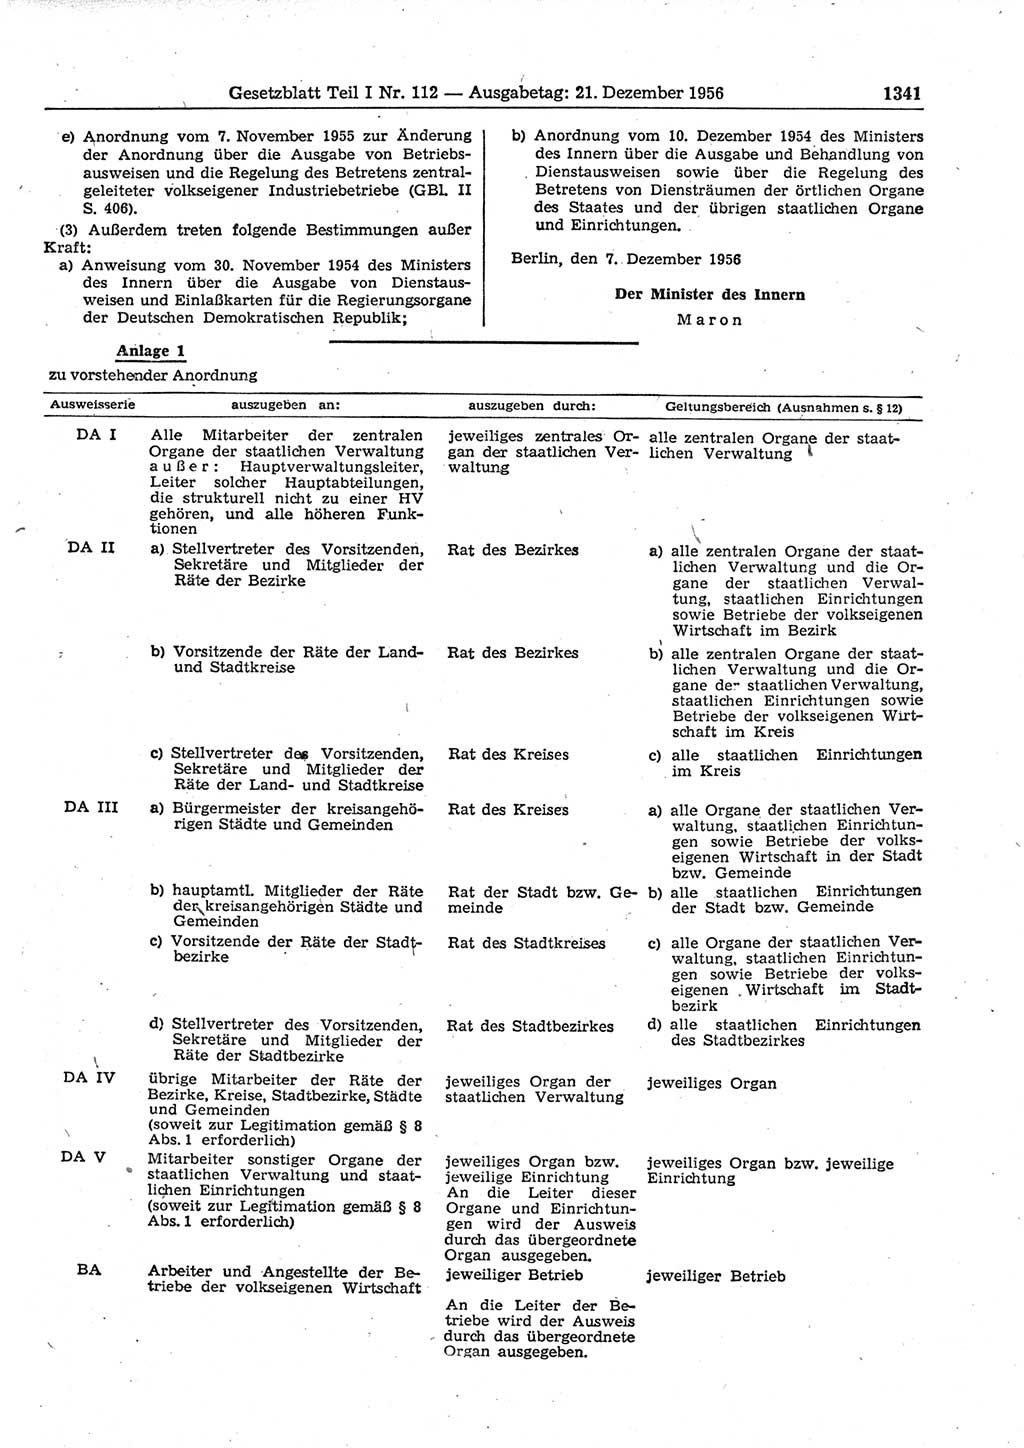 Gesetzblatt (GBl.) der Deutschen Demokratischen Republik (DDR) Teil Ⅰ 1956, Seite 1341 (GBl. DDR Ⅰ 1956, S. 1341)